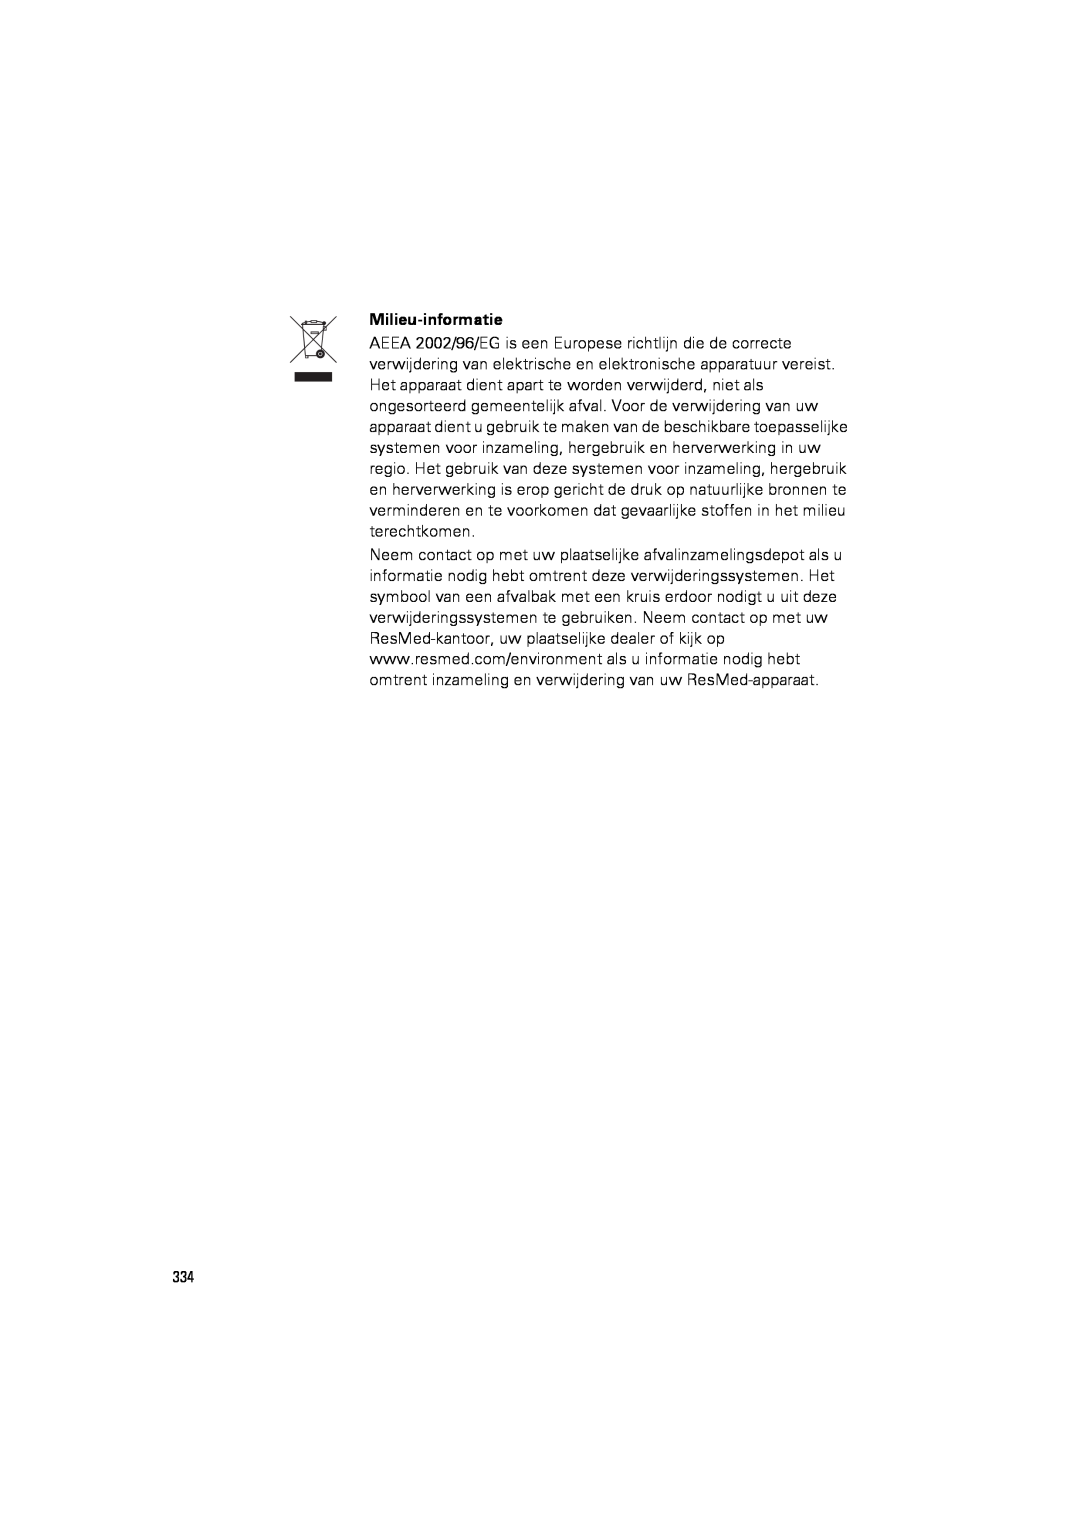 ResMed III & III ST user manual Milieu-informatie 